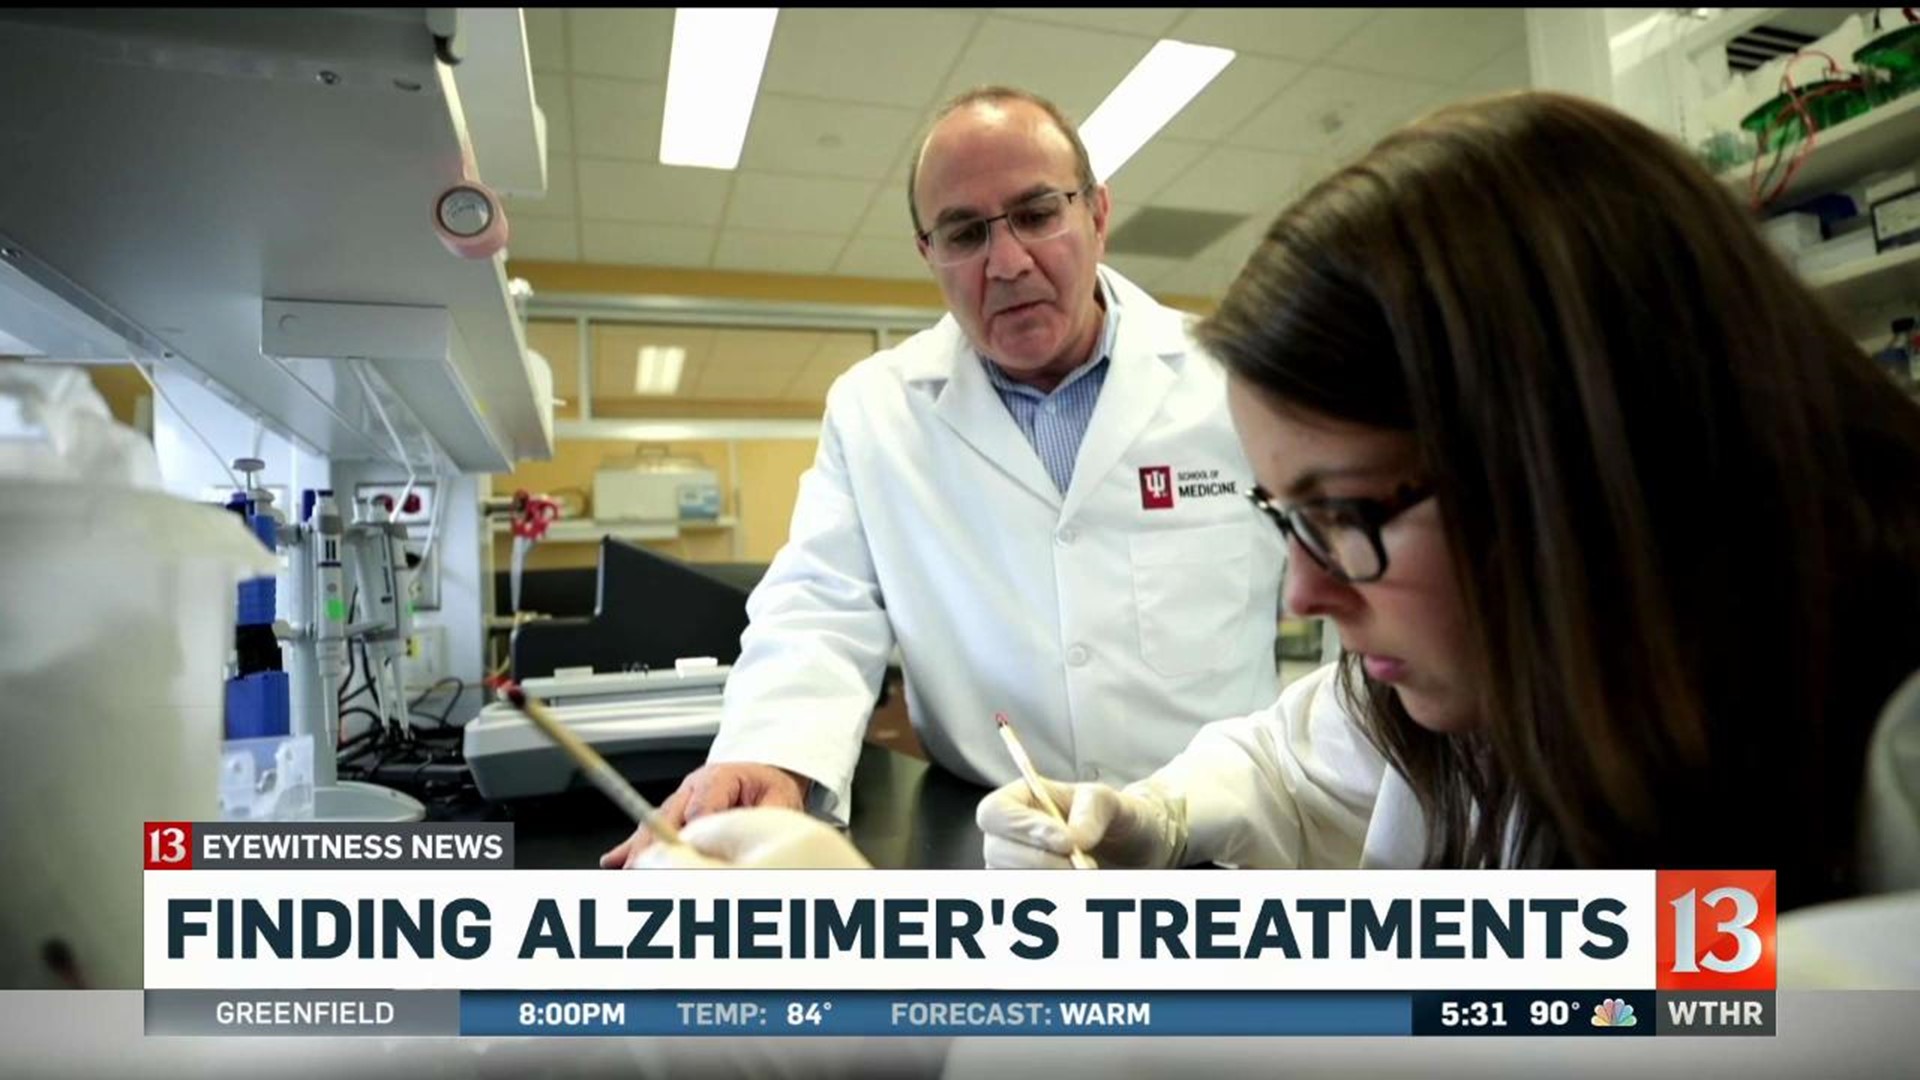 Major step in fighting Alzheimer's